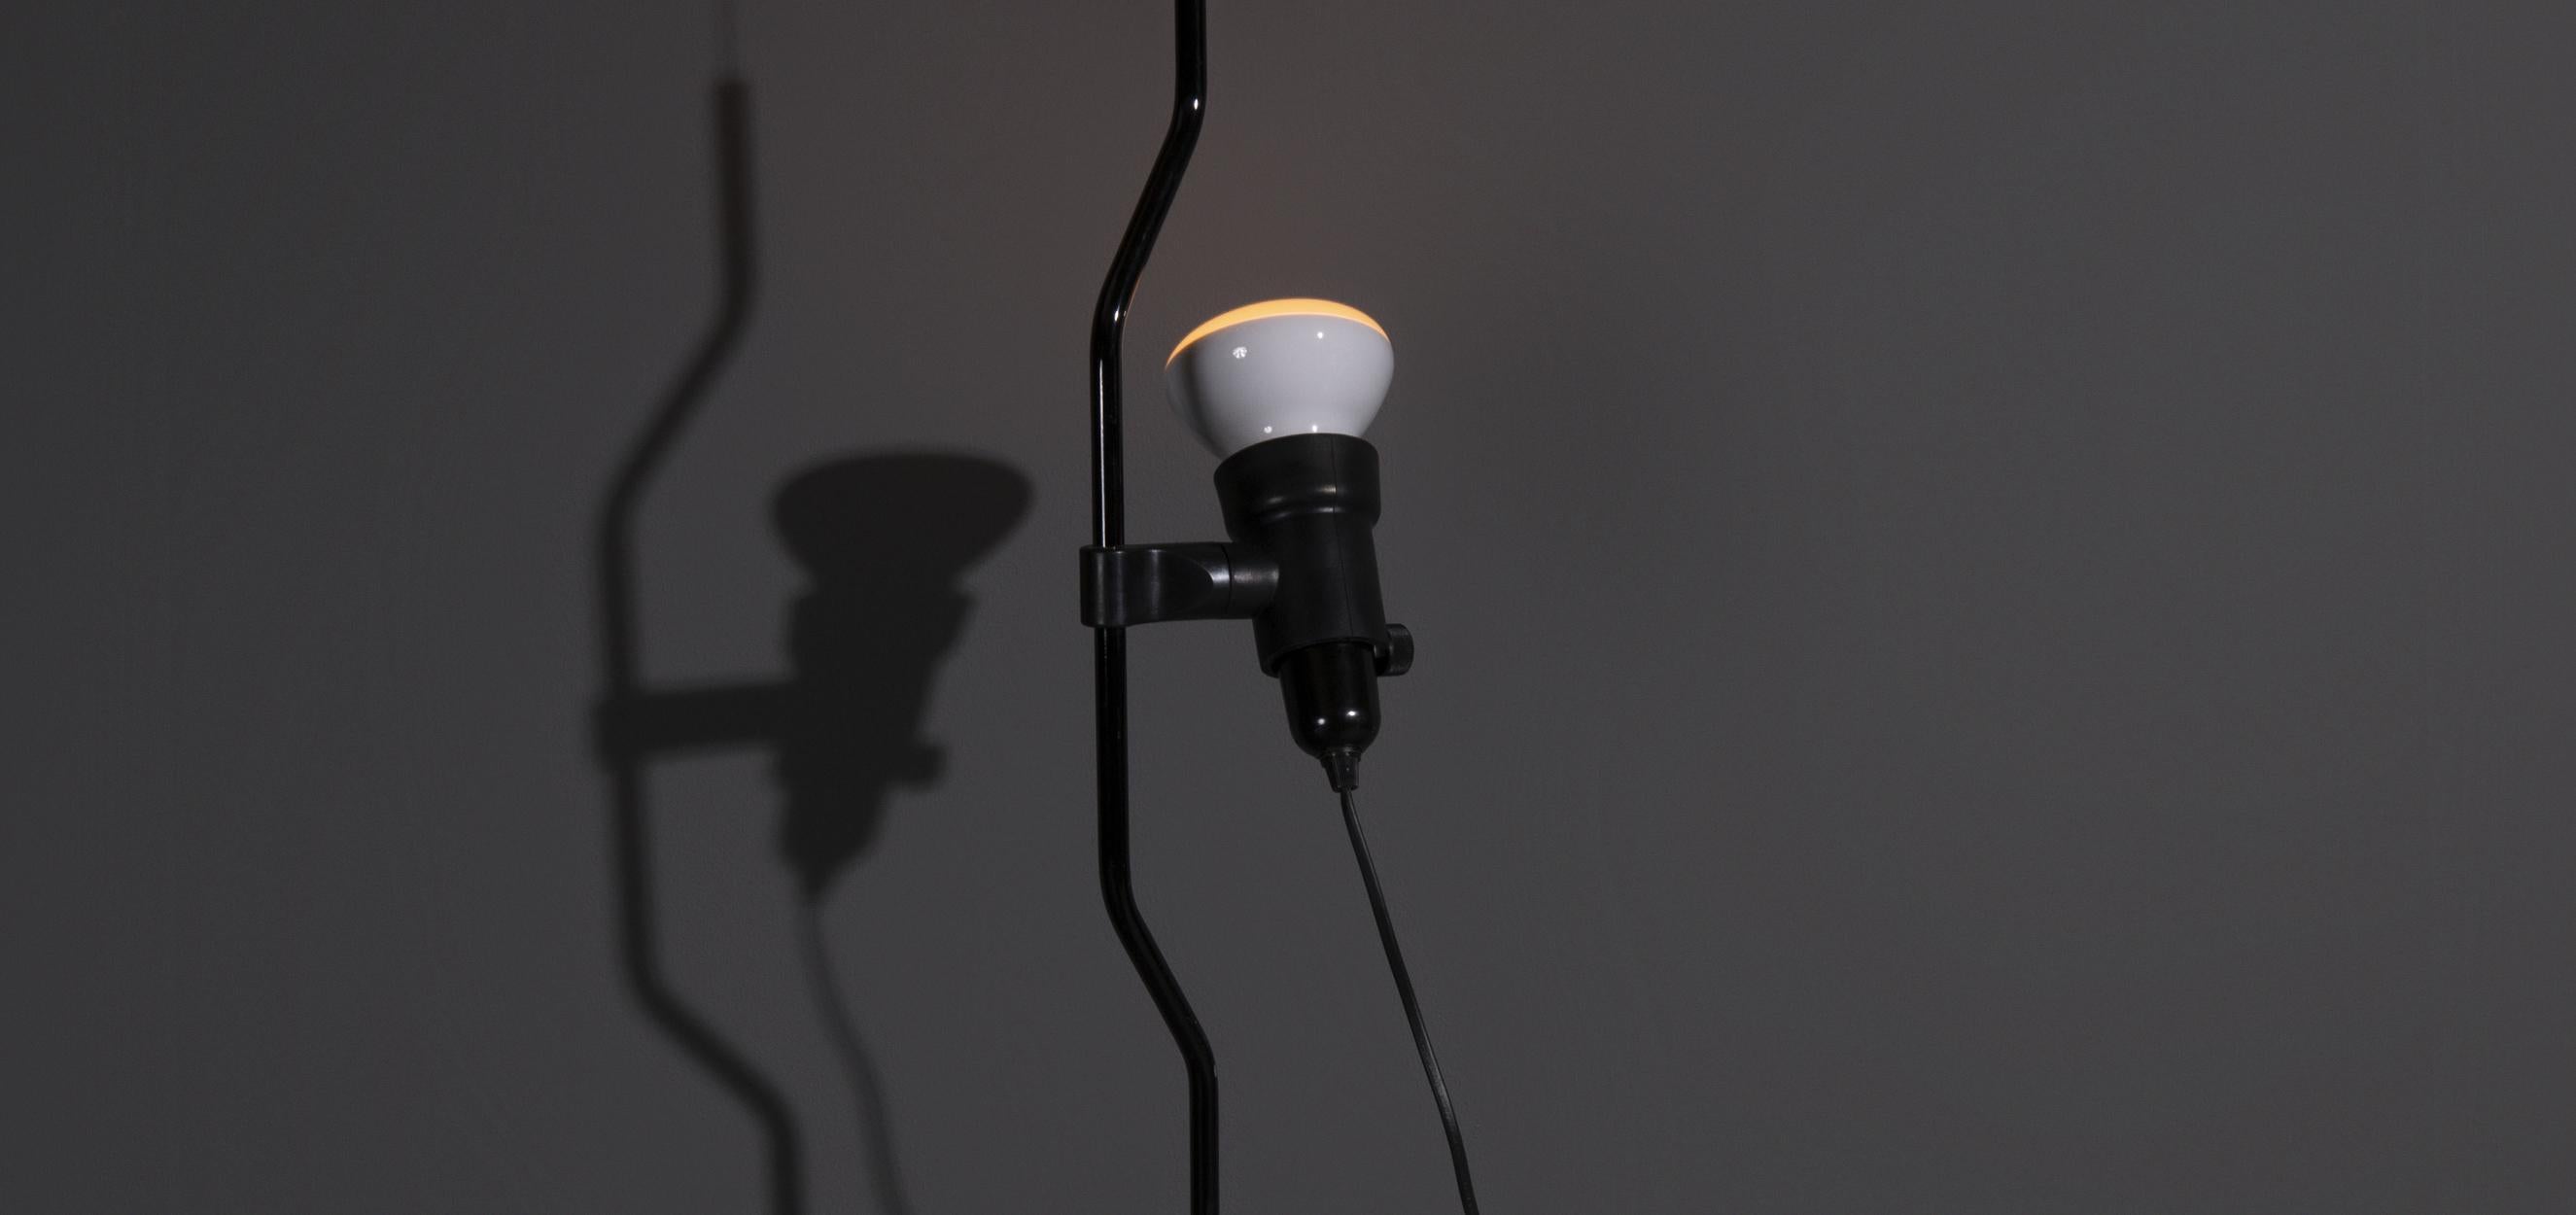 Lampe suspendue Parentesi conçue par Achille Castiglioni et Pio Manzù dans les années 1970. Cette lampe suspendue est produite par Flos, un célèbre producteur de design italien. Ce modèle est réglable en hauteur et reste à la hauteur souhaitée grâce